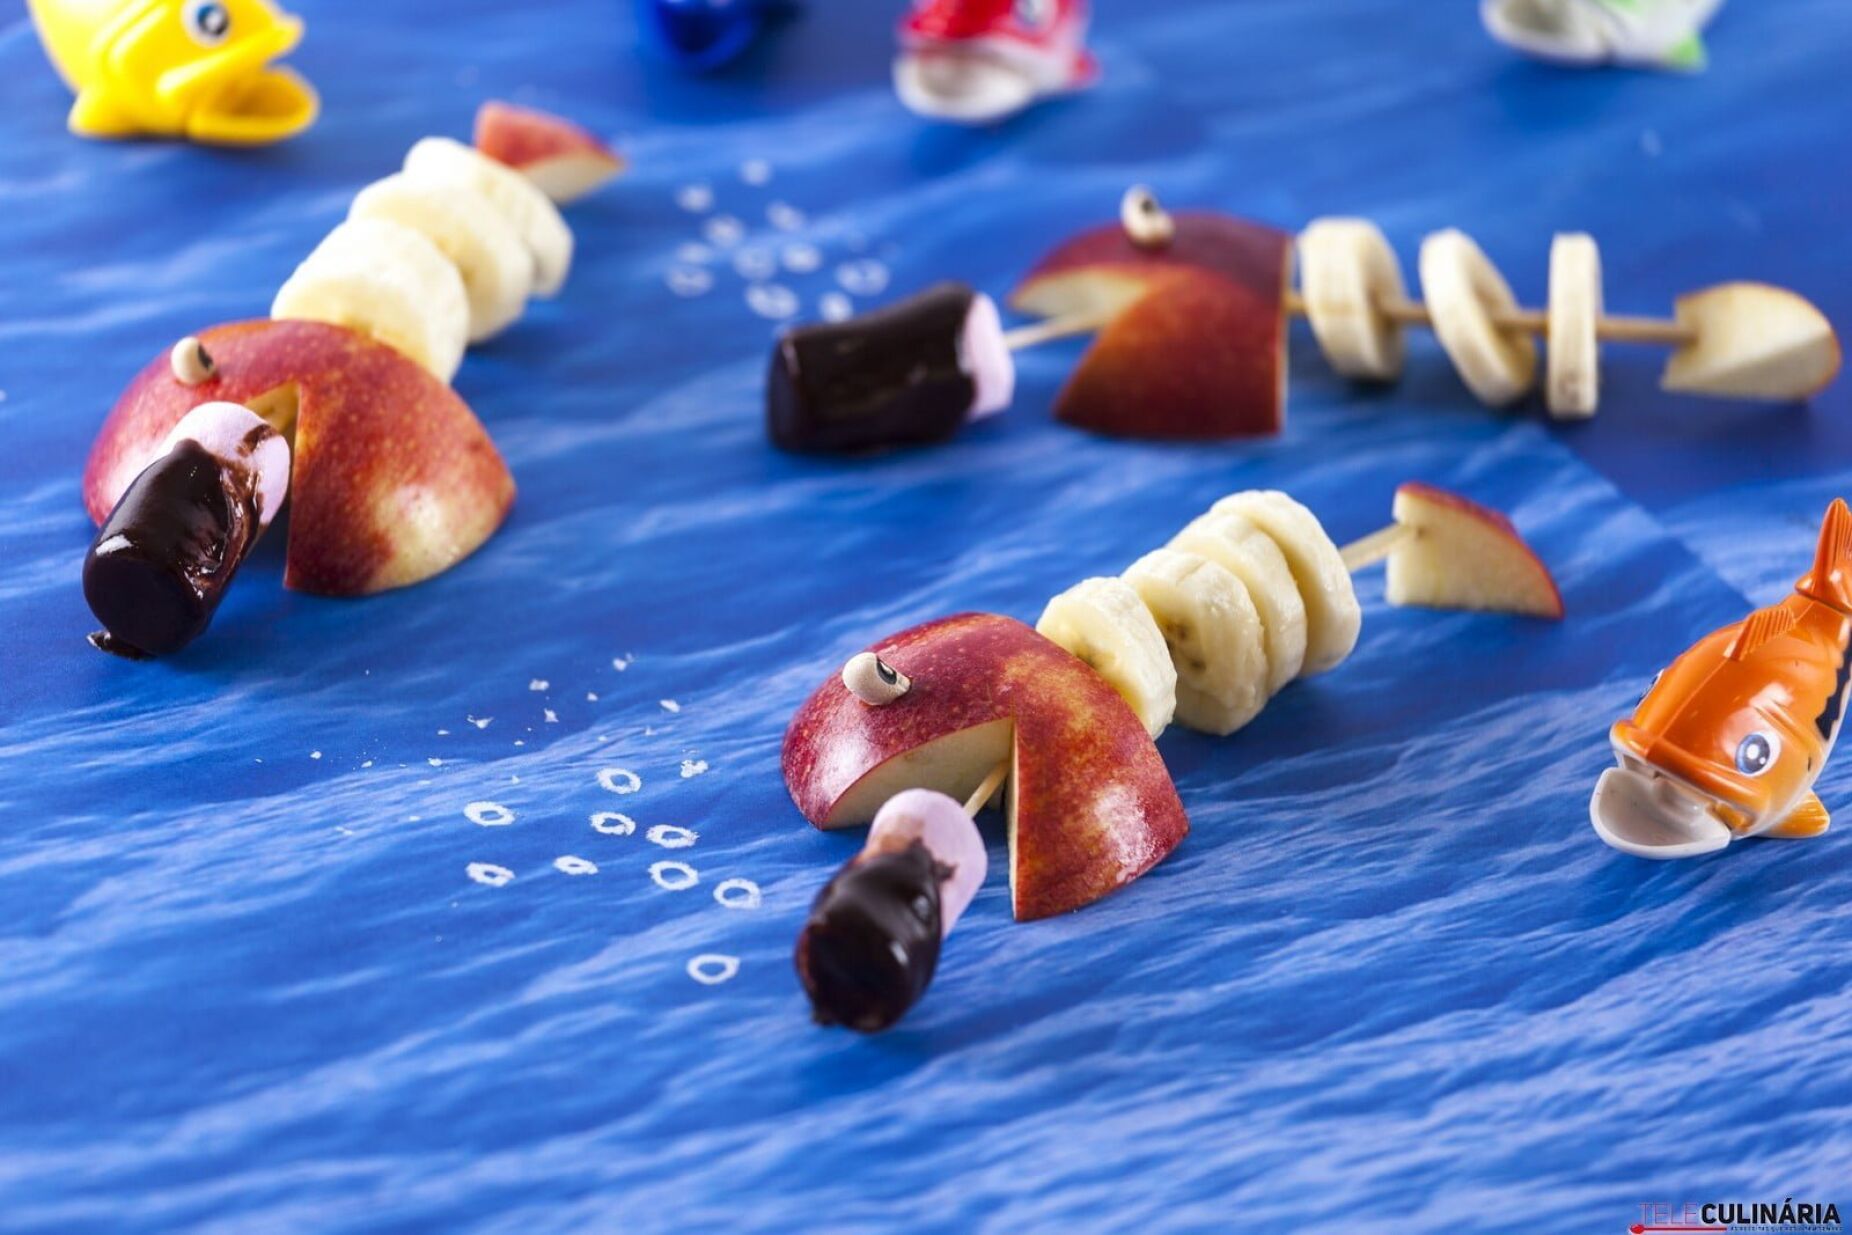 Peixinhos de fruta e marshmallows com chocolate